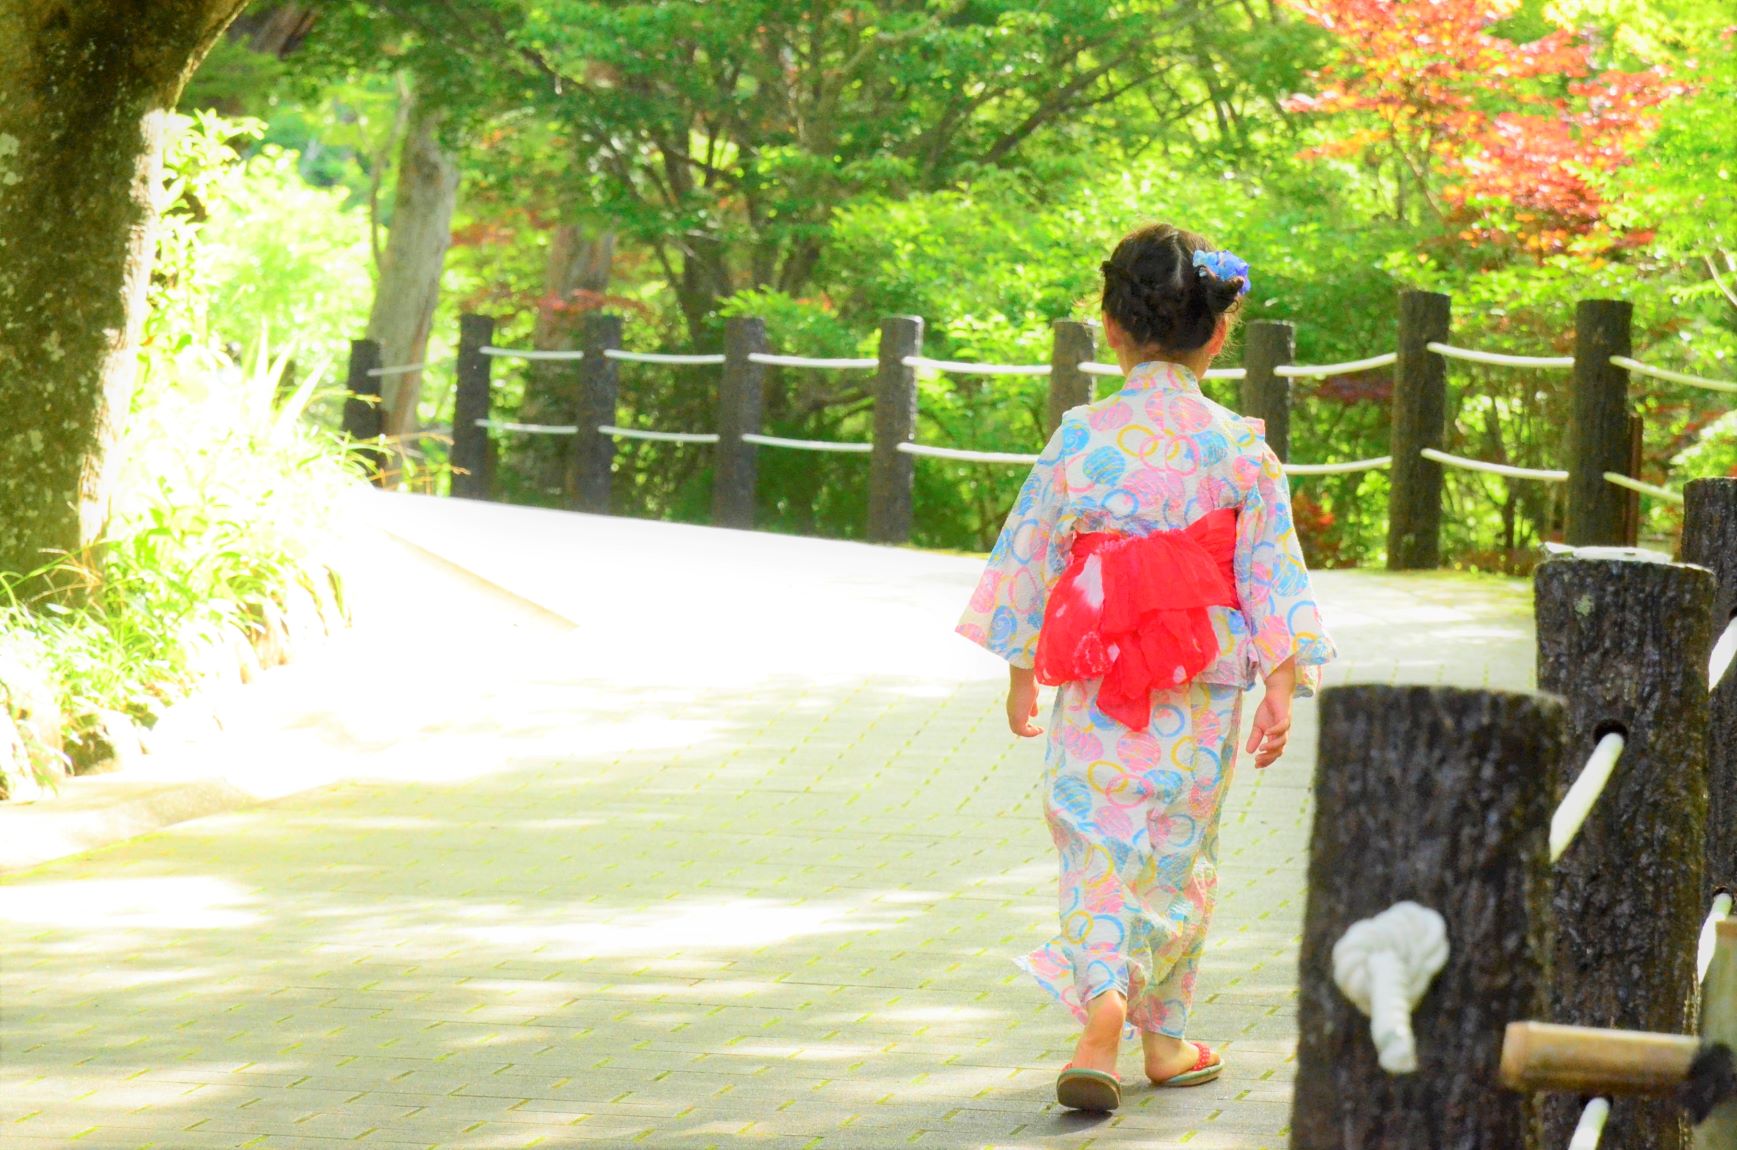 HATTASAN walking in a yukata